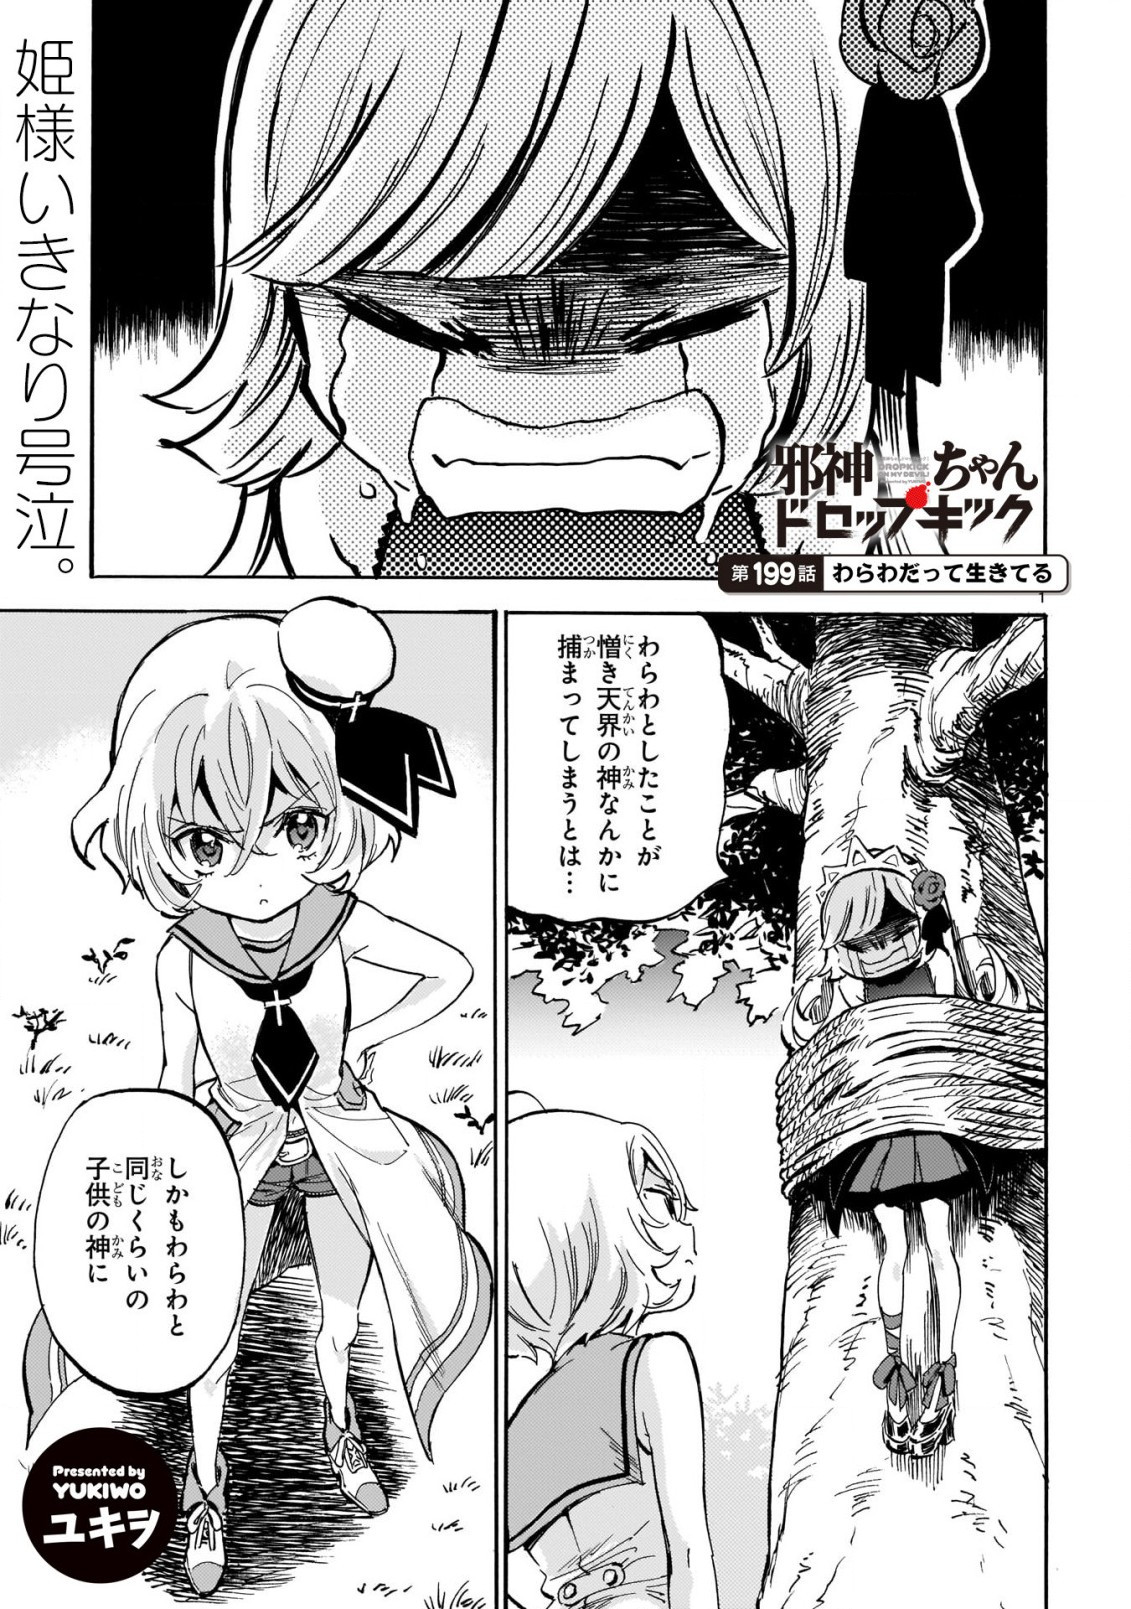 Jashin-chan Dropkick - Chapter 199 - Page 1